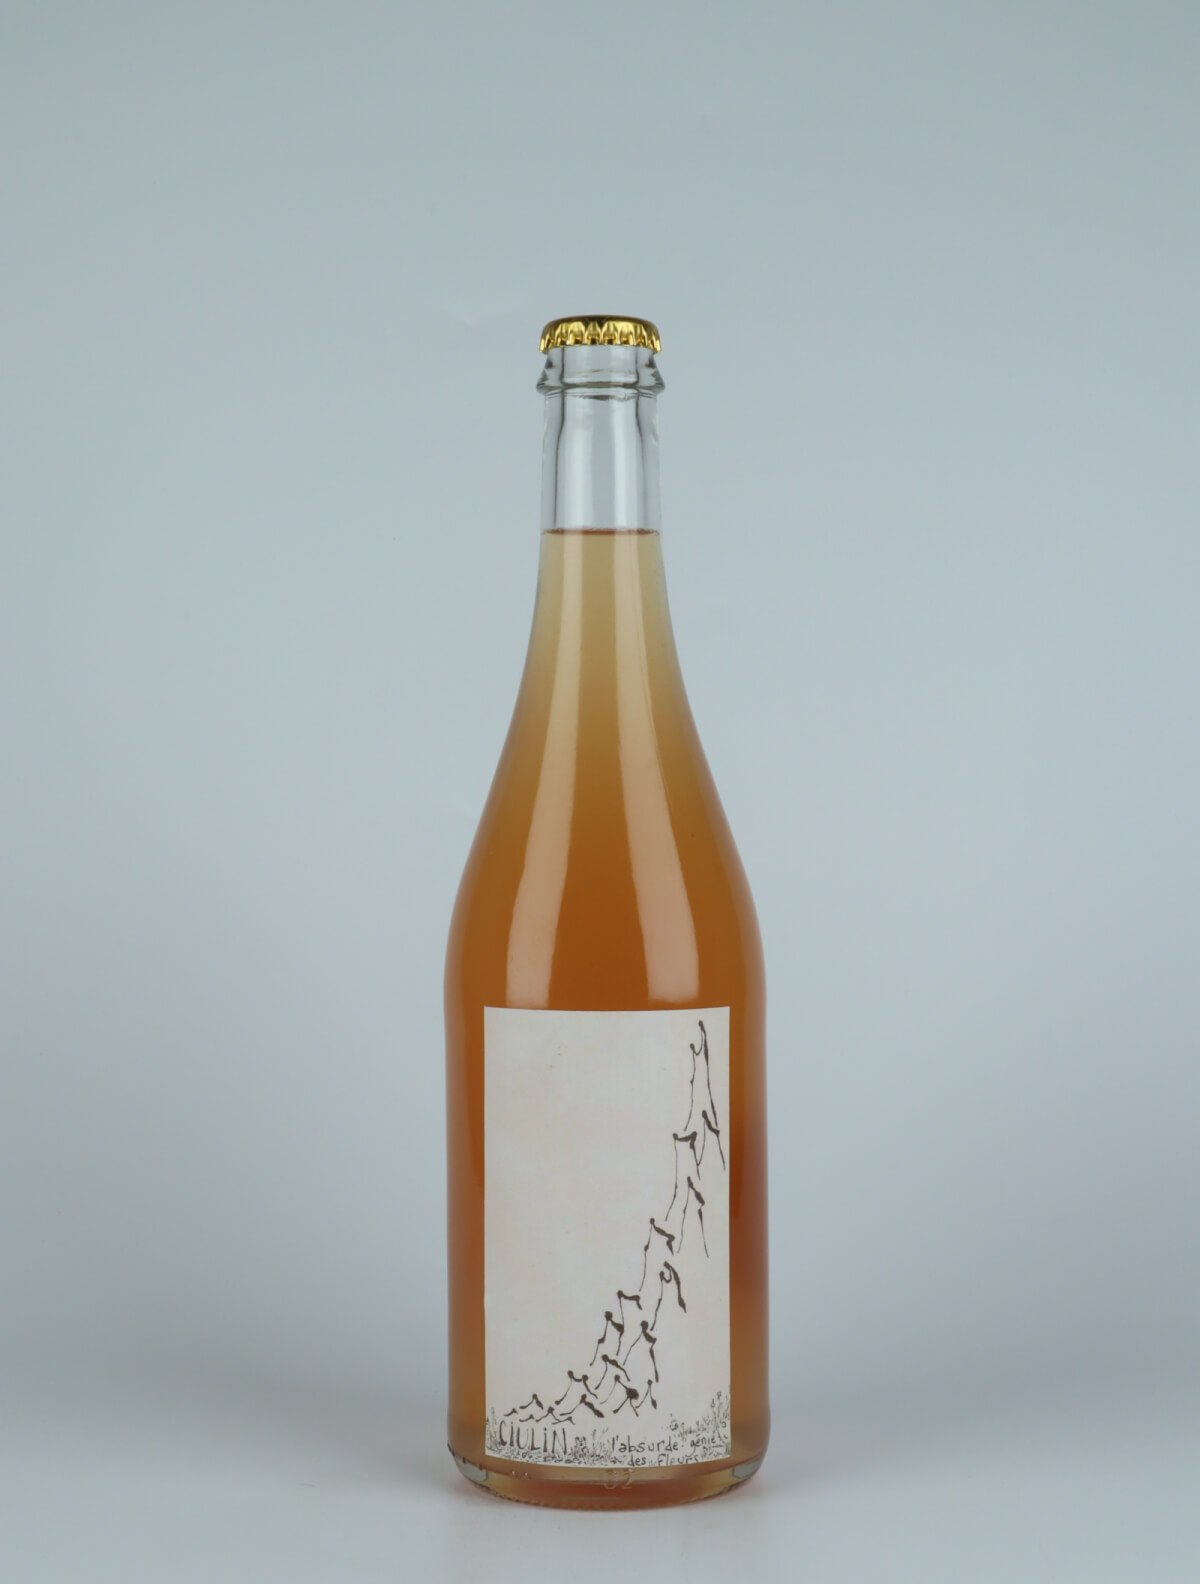 En flaske 2021 Ciulin Hvidvin fra Absurde Génie des Fleurs, Languedoc i Frankrig